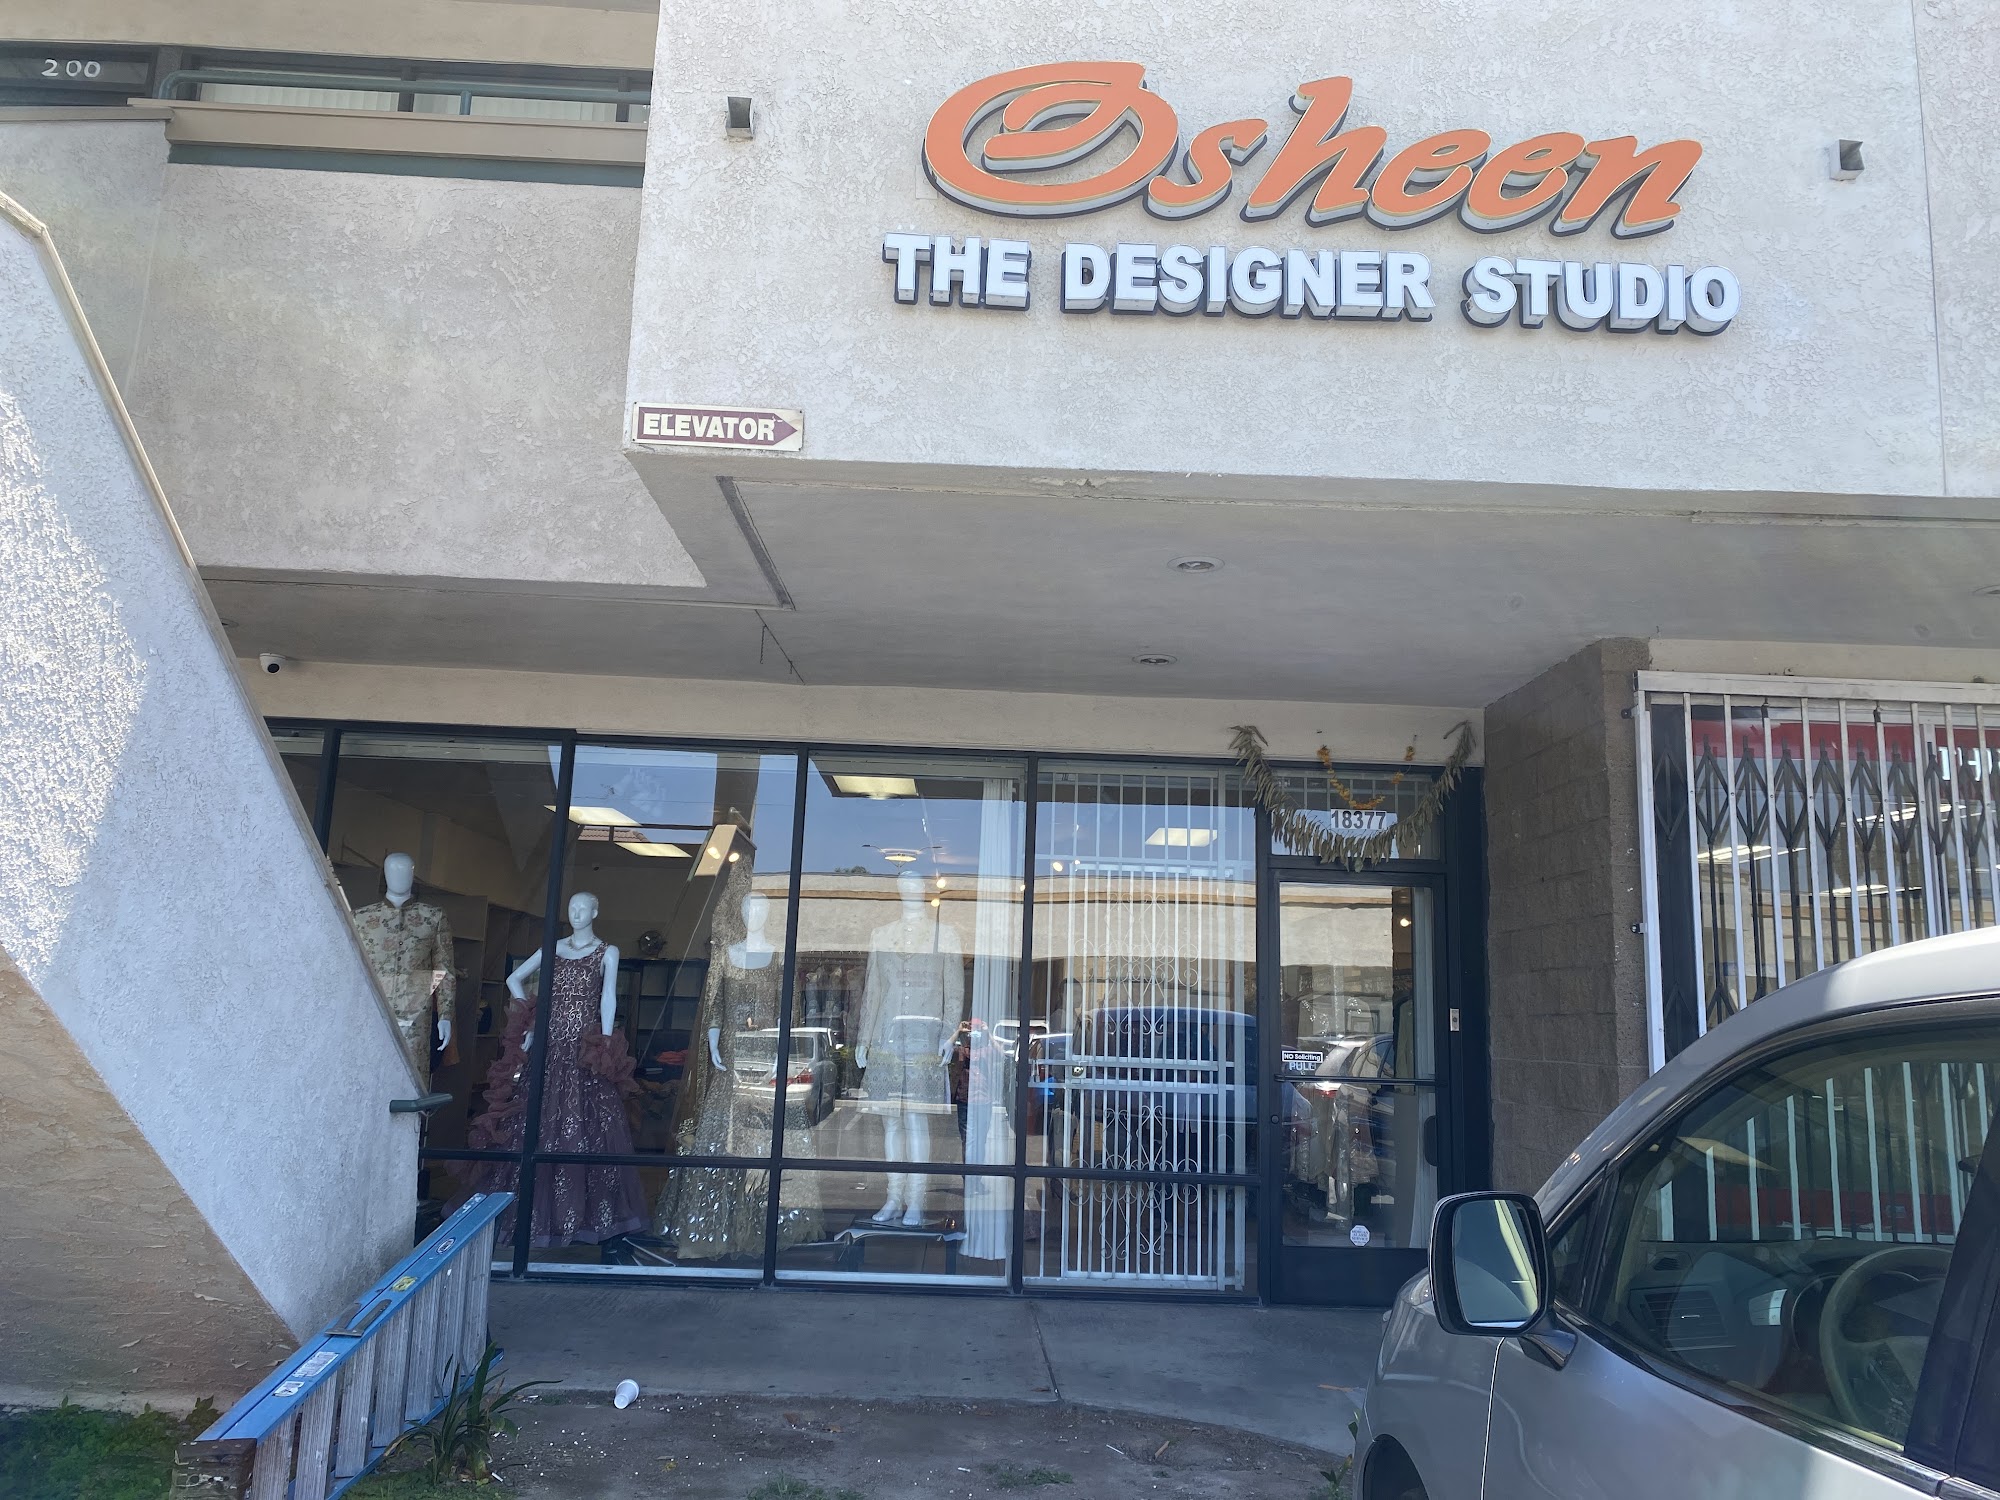 OSHEEN THE DESIGNER STUDIO